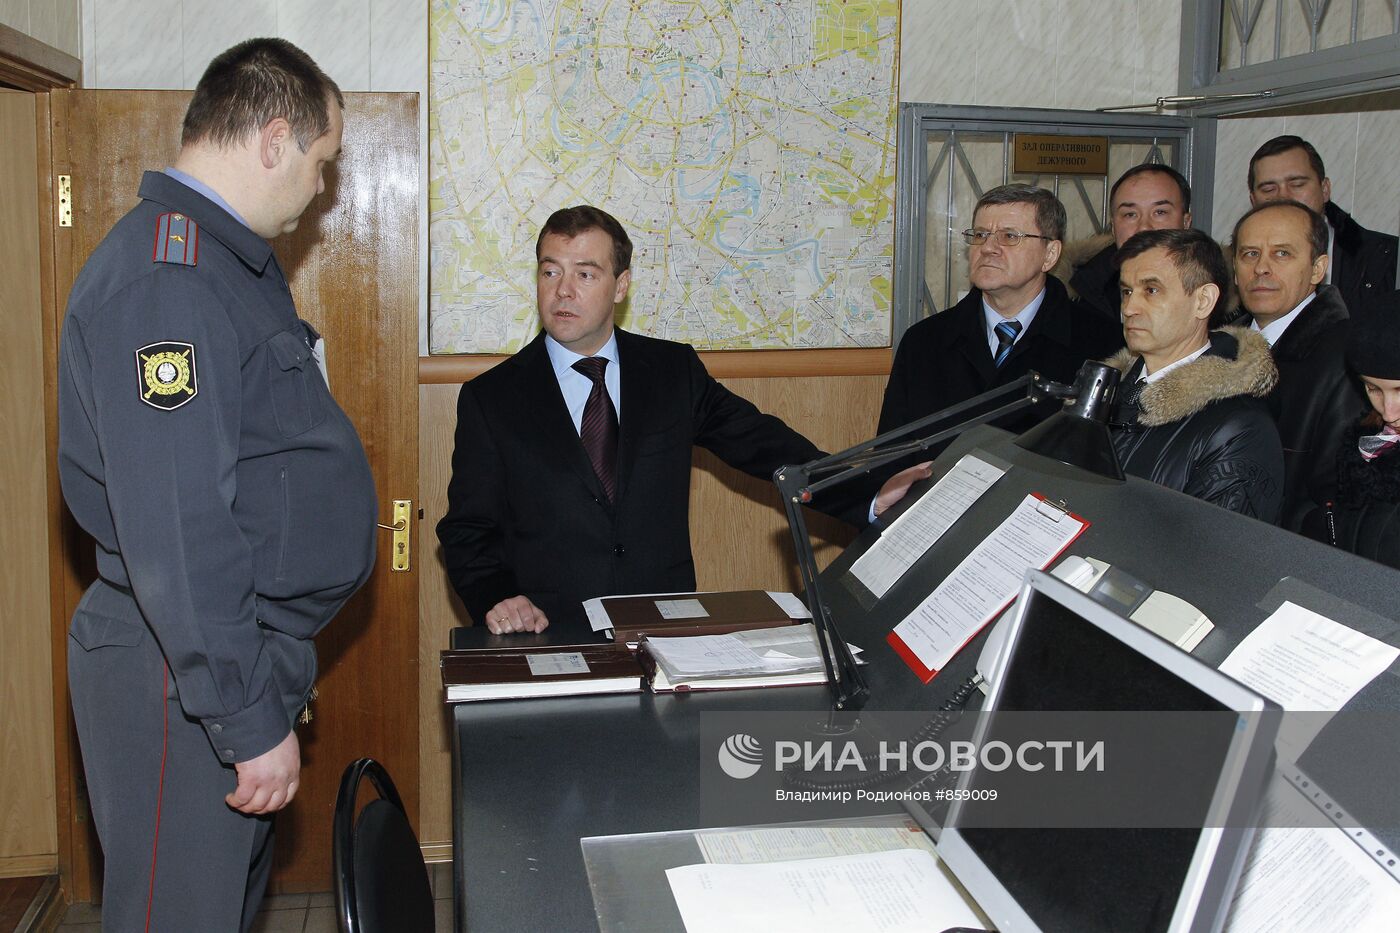 Д.Медведев проверил безопасность Киевского вокзала